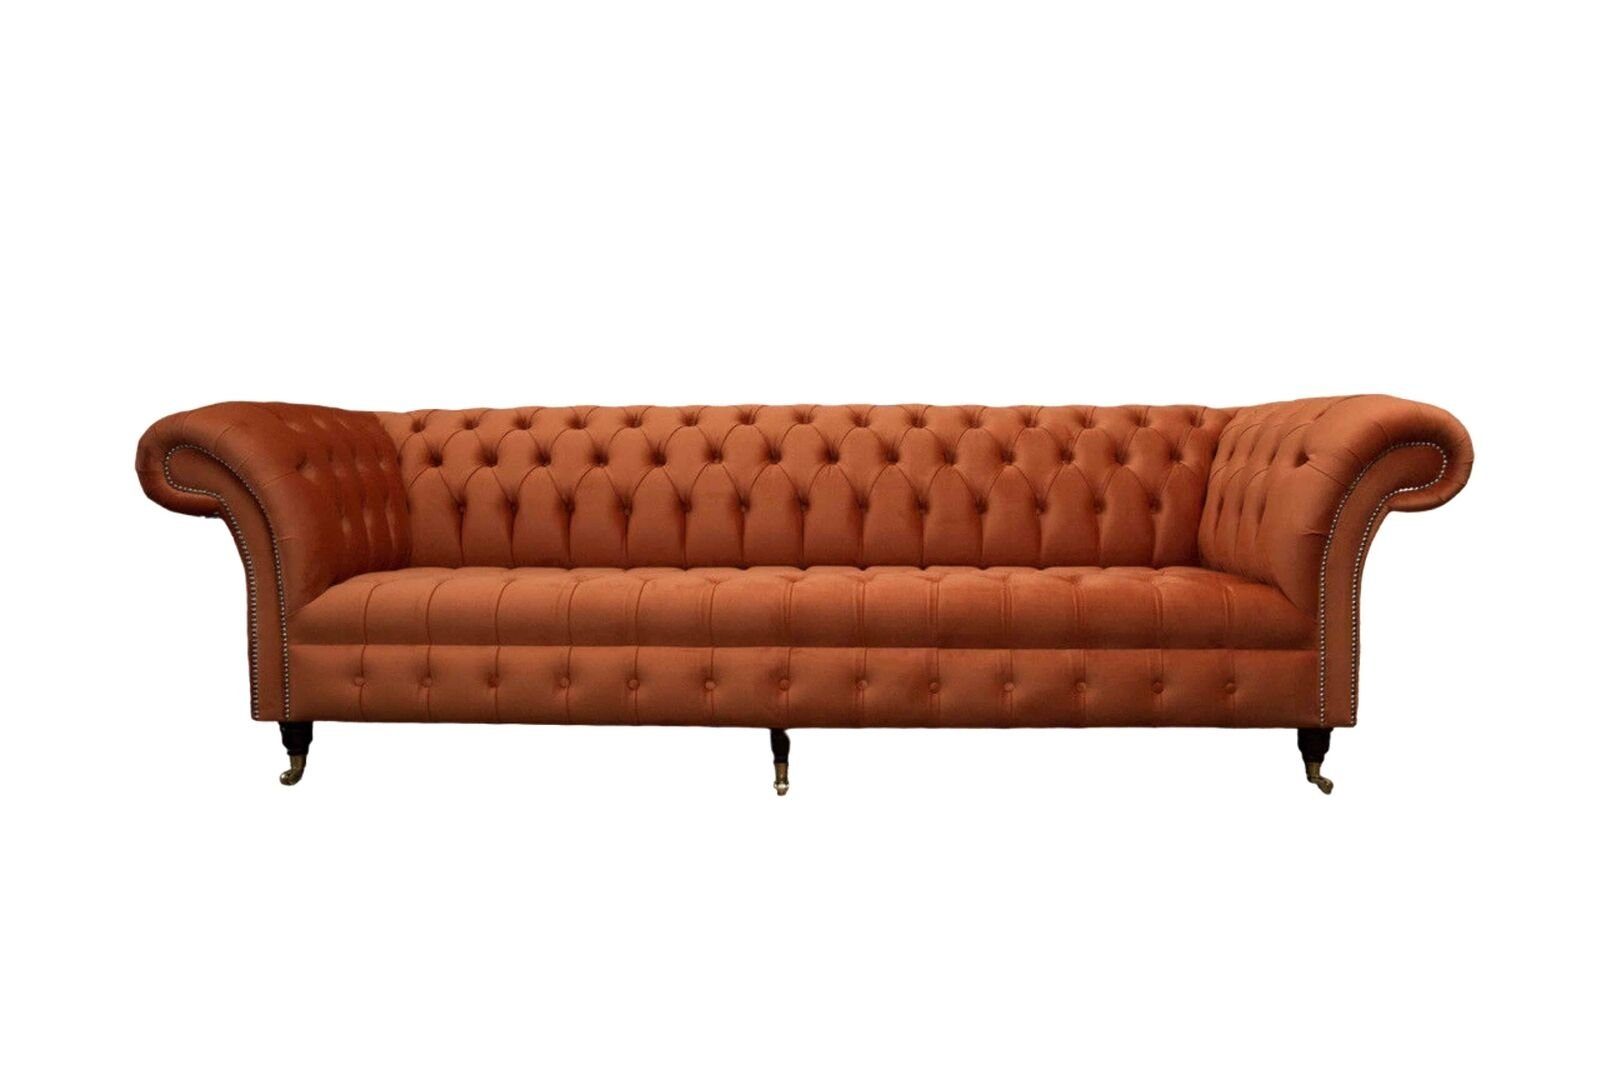 JVmoebel Britischer Design Sofa In Couch Europe Viersitzer Chesterfield Sofa, Made Luxus Sofa